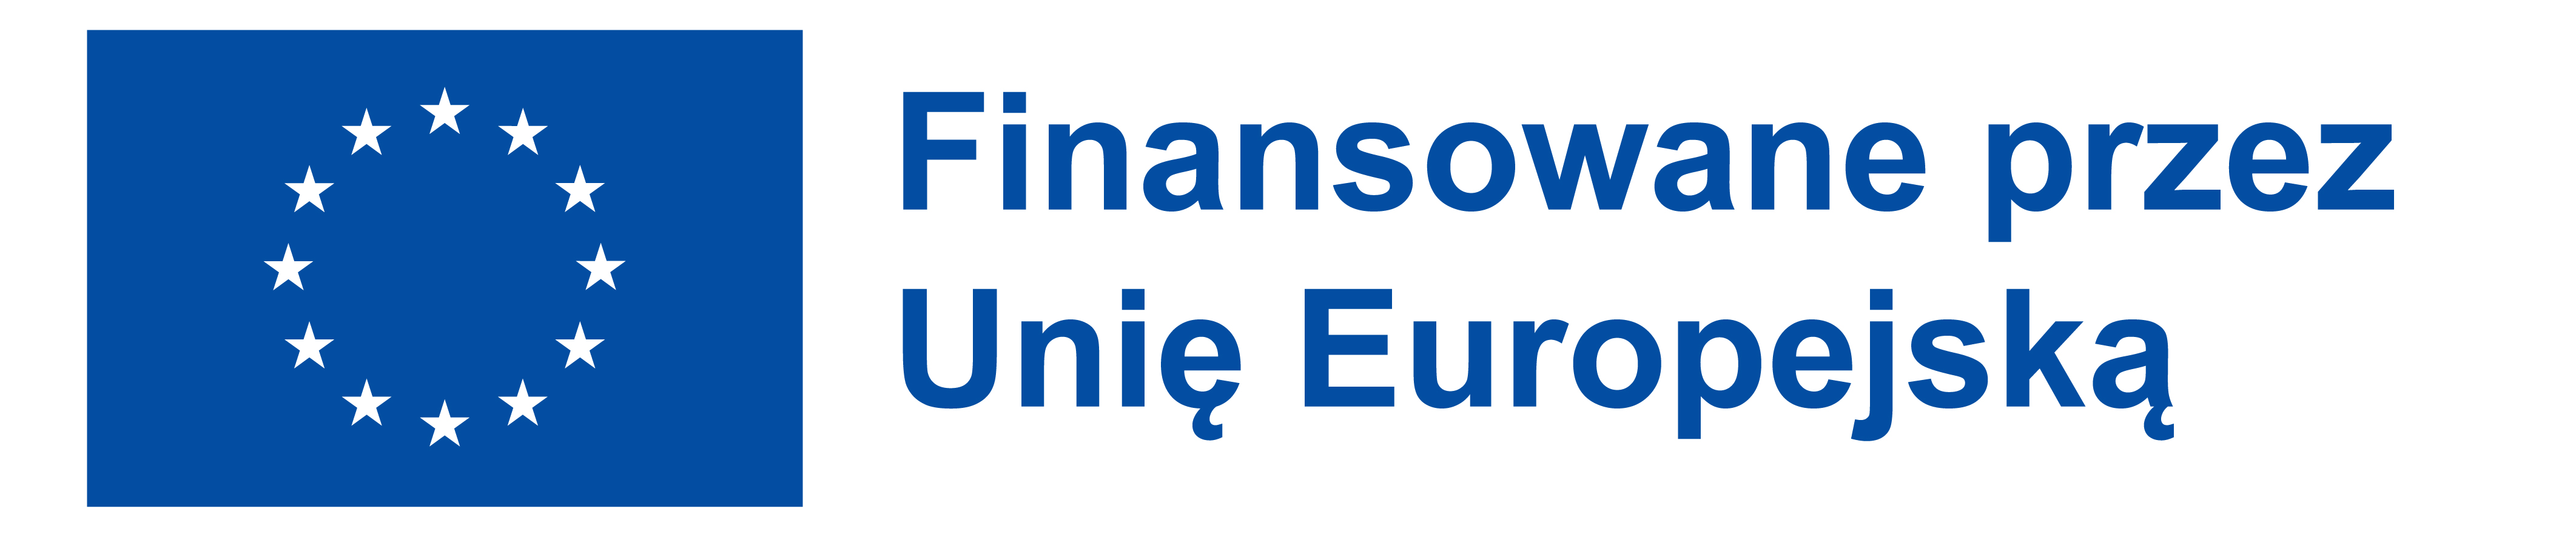 PL Finansowane przez Unię Europejską PANTONE